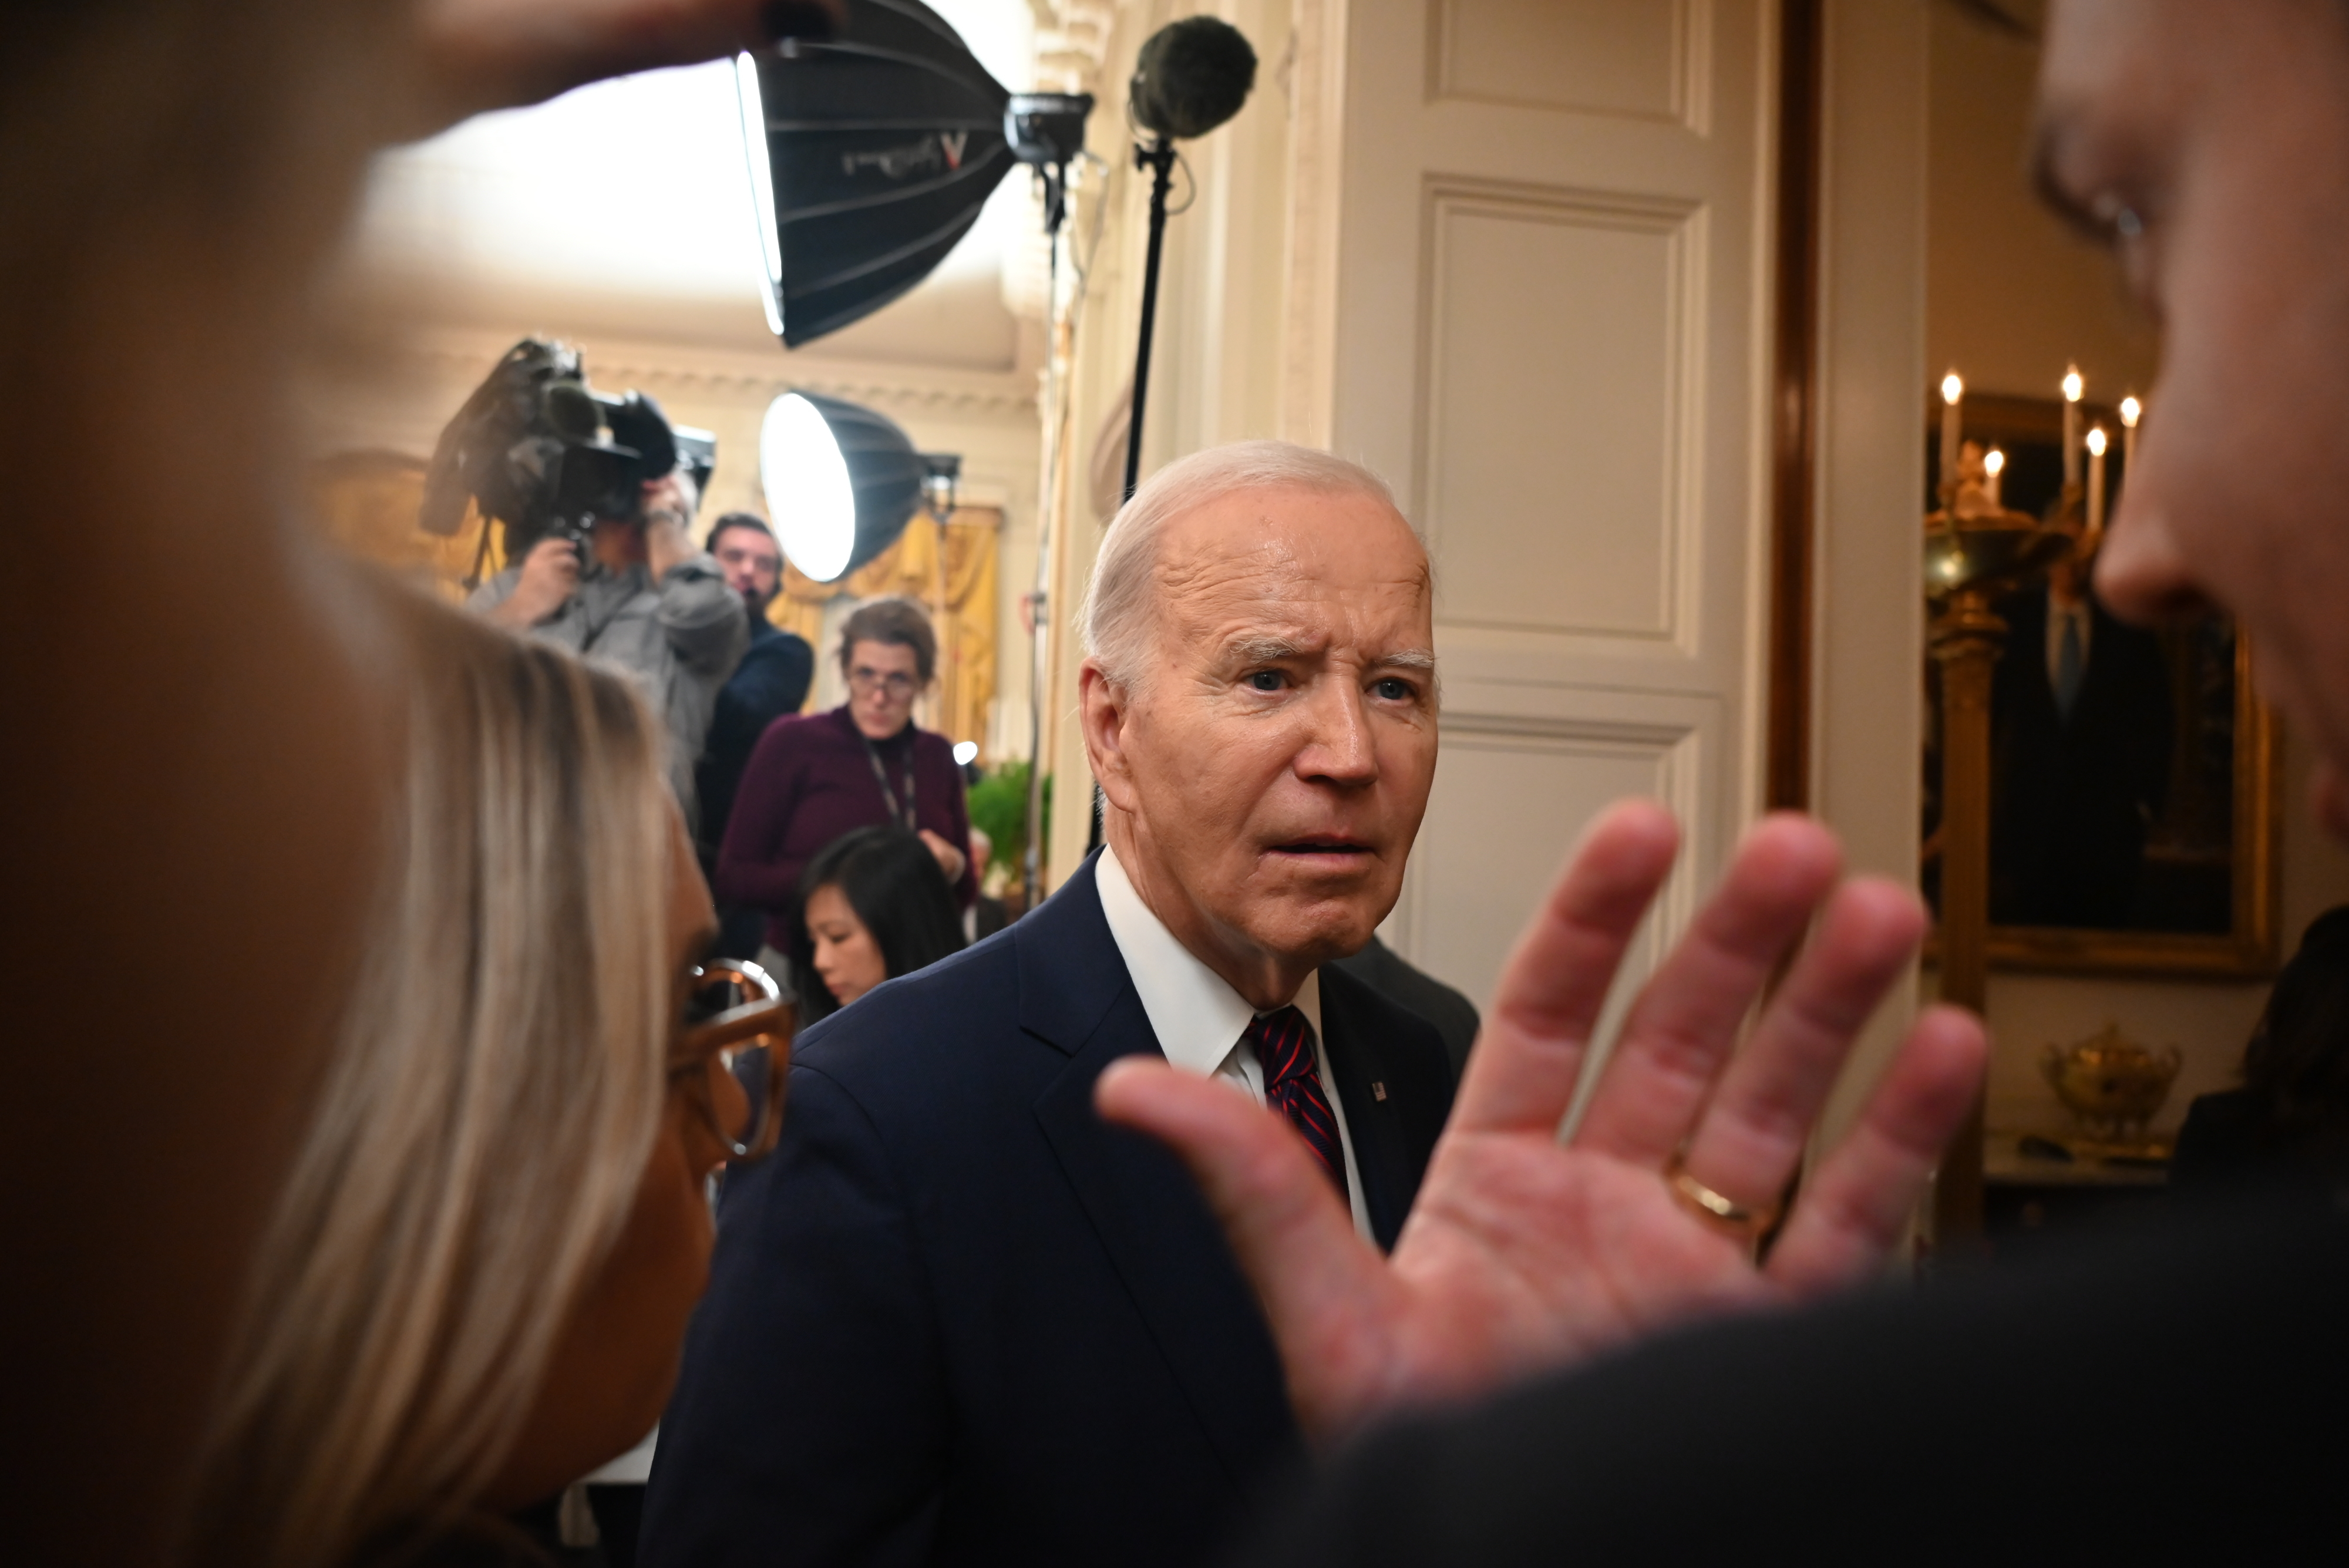 La IA irromp a les primàries de New Hampshire: fals missatge de Joe Biden per desmobilitzar votants